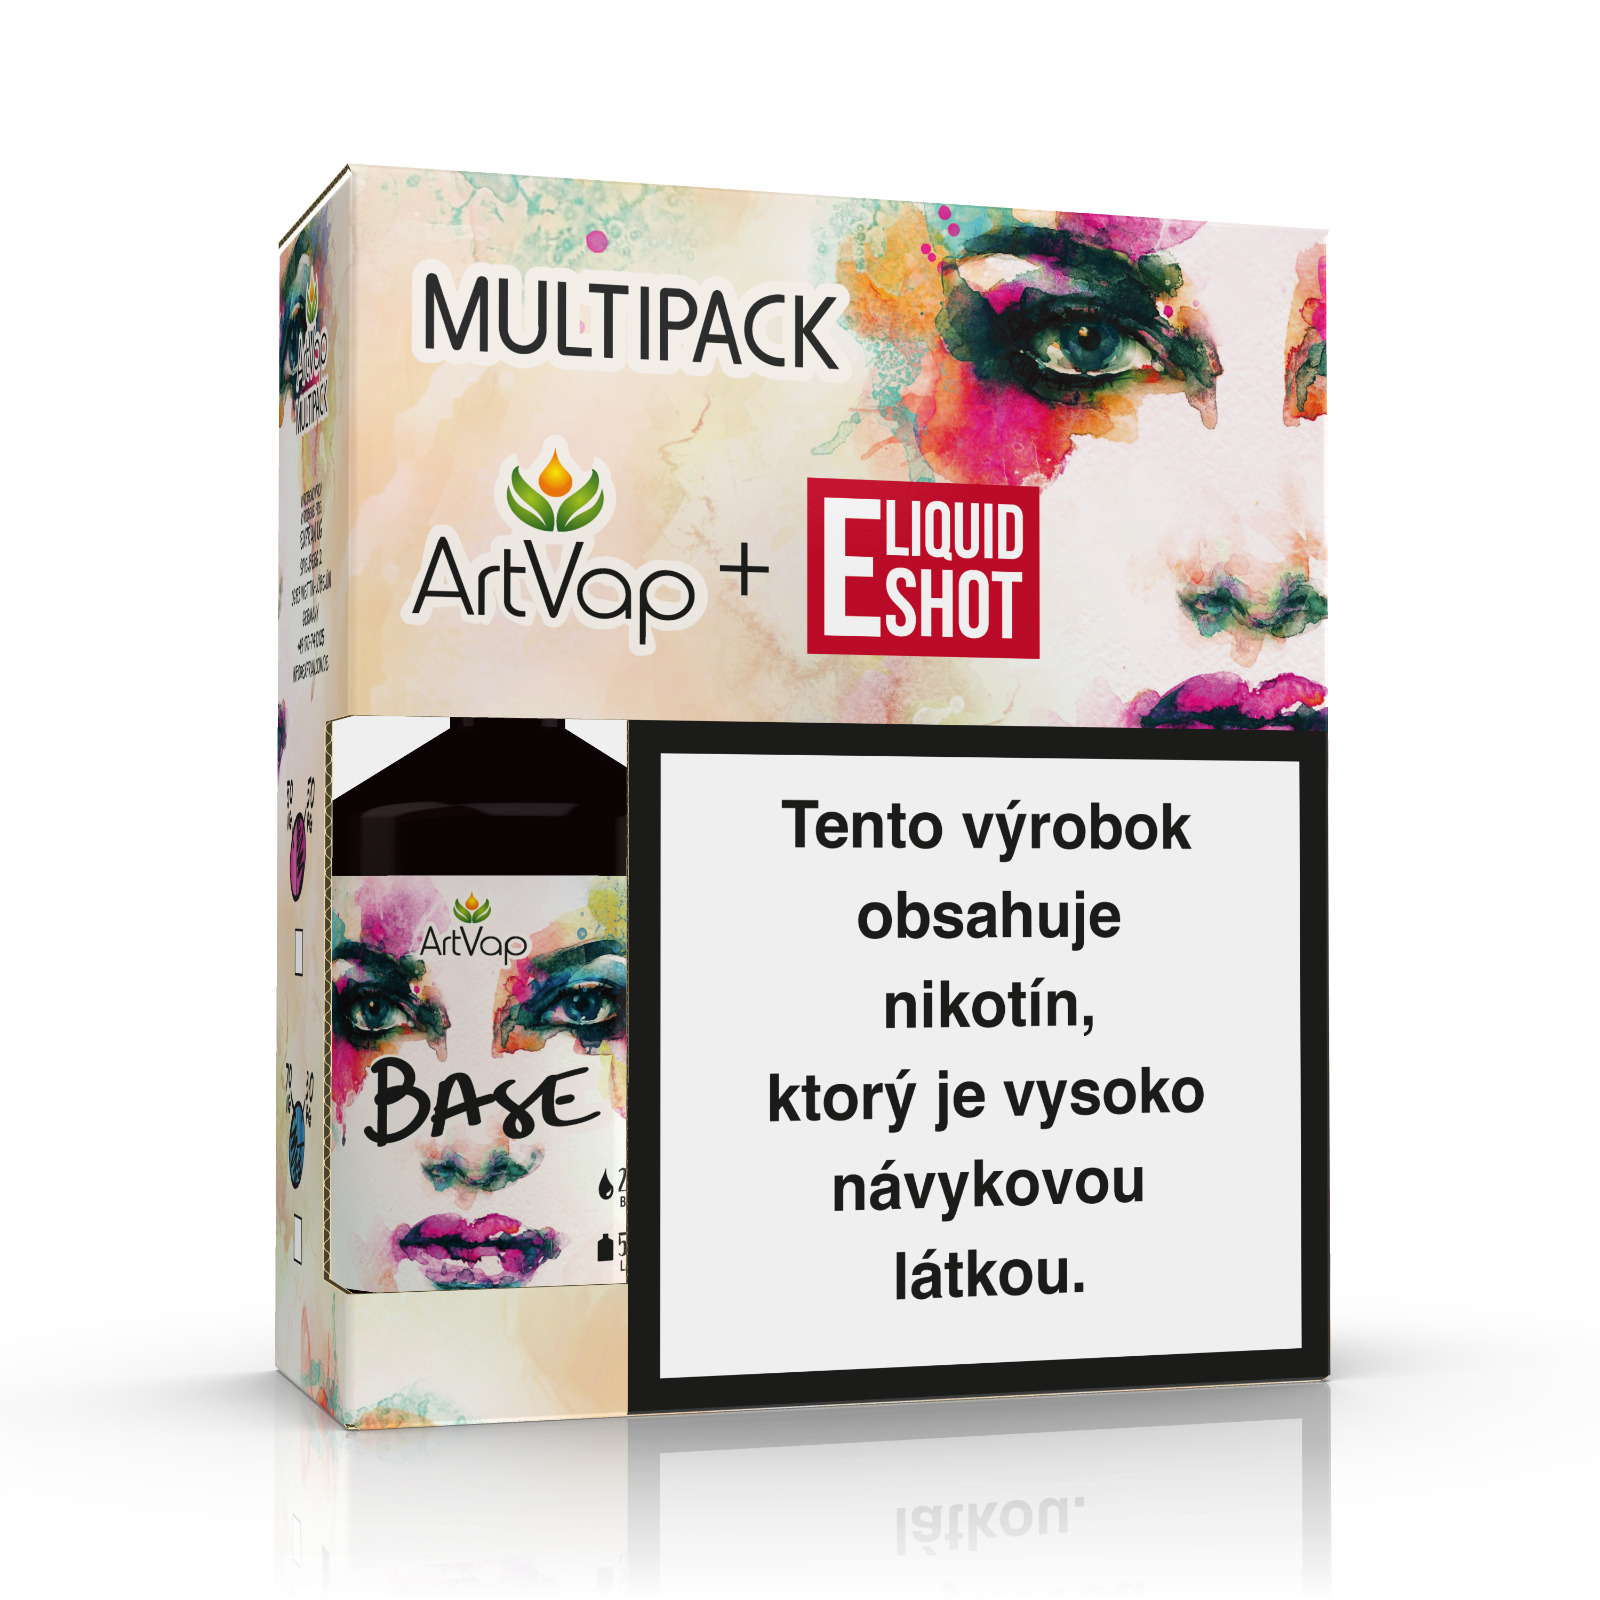 Multipack 500 ml 50PG/50VG 4 mg/ml